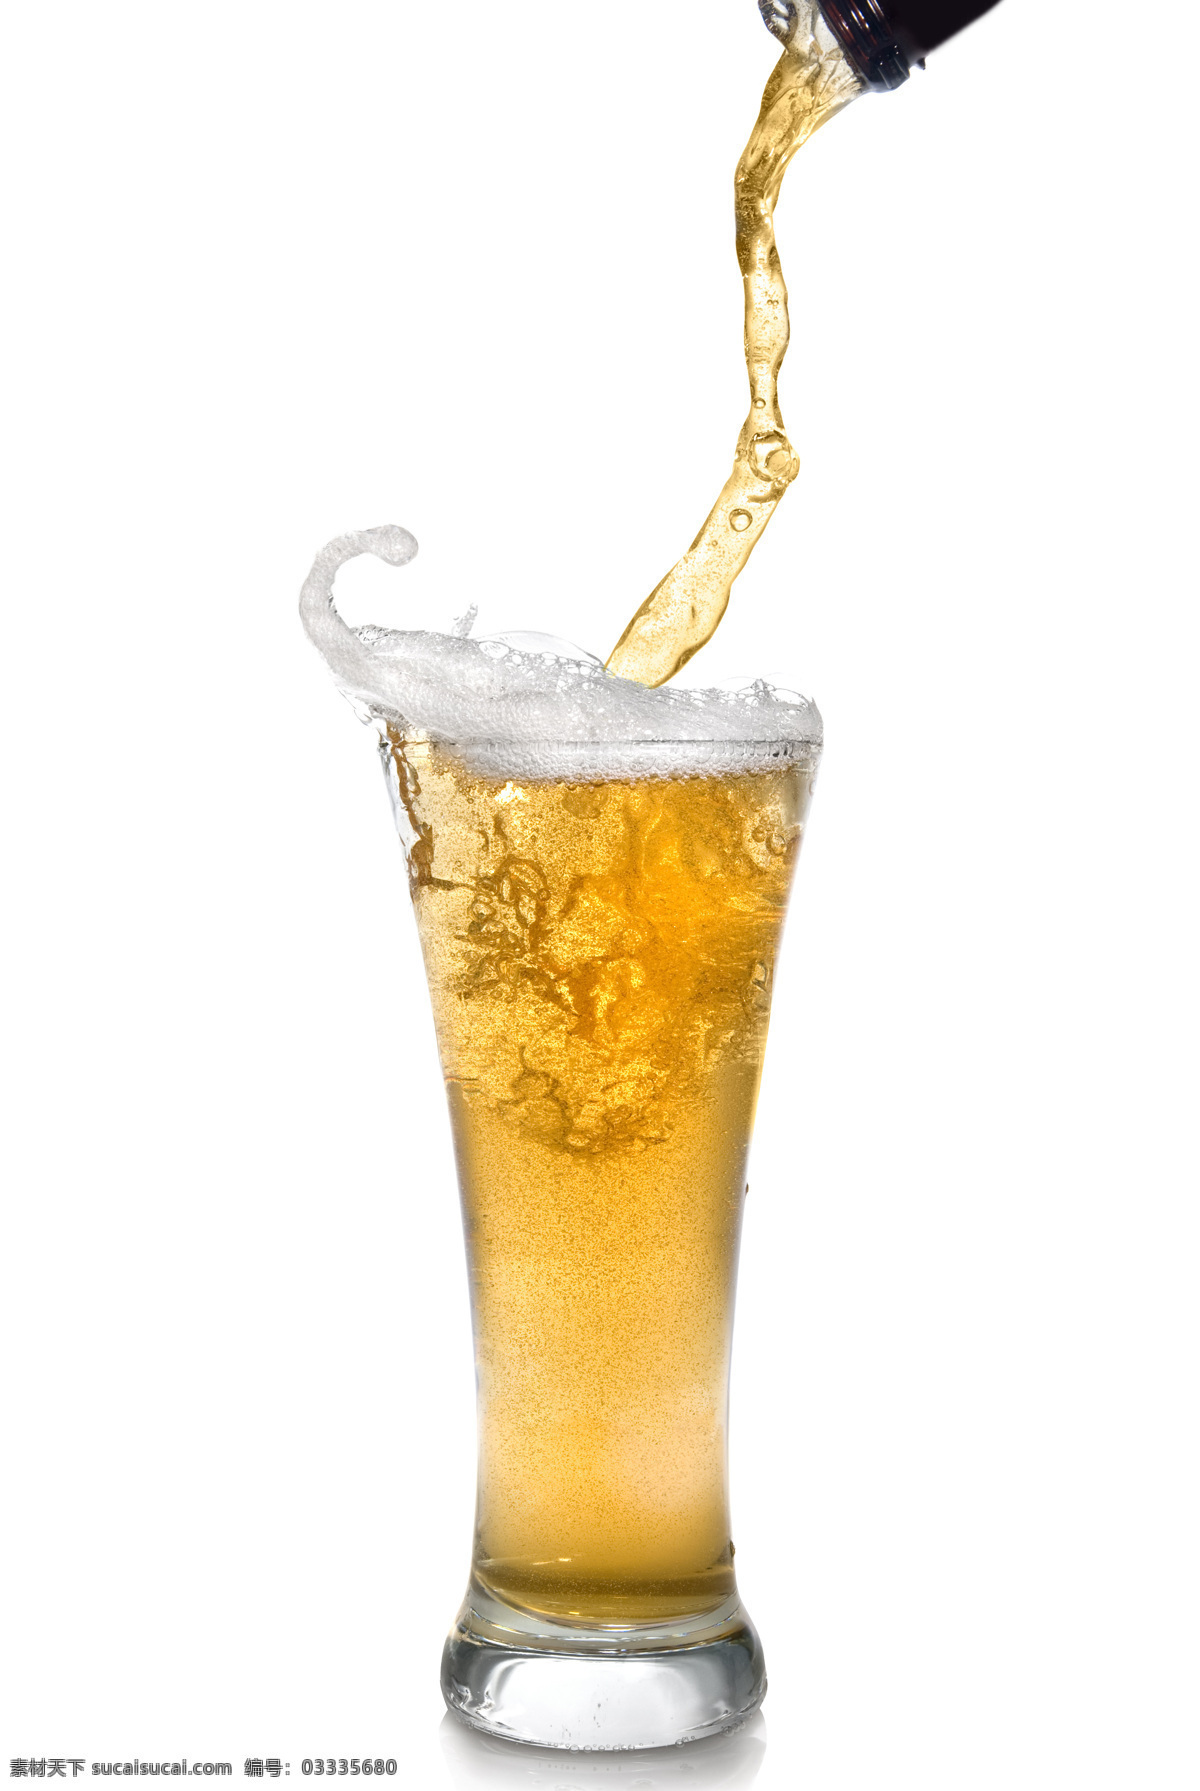 高清 倒 啤酒 高清倒啤酒 倒啤酒 啤酒元素 啤酒素材 餐饮美食 饮料酒水